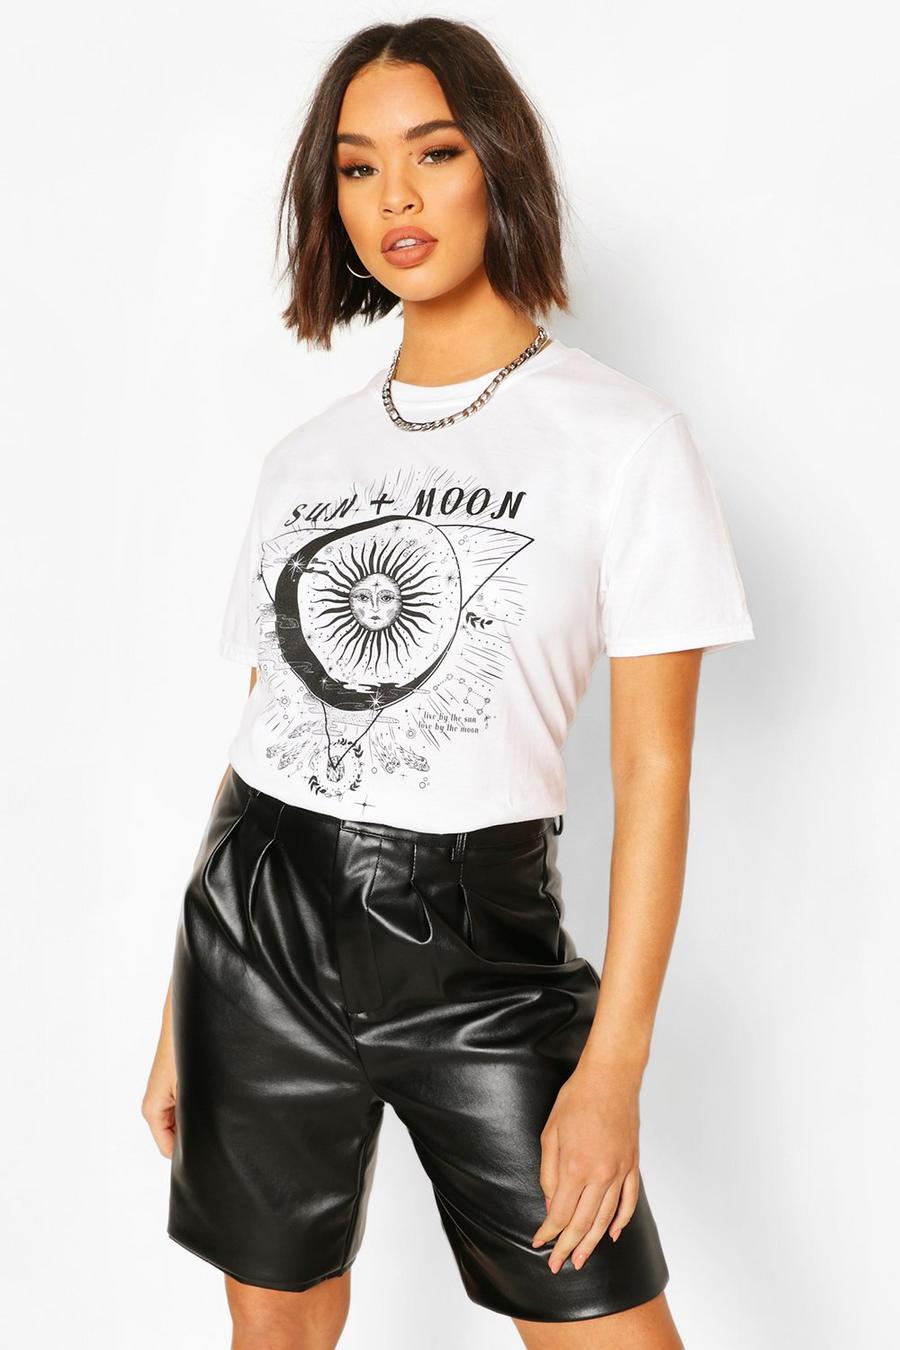 Camiseta con triángulo y eslogan “Sun and Moon” image number 1